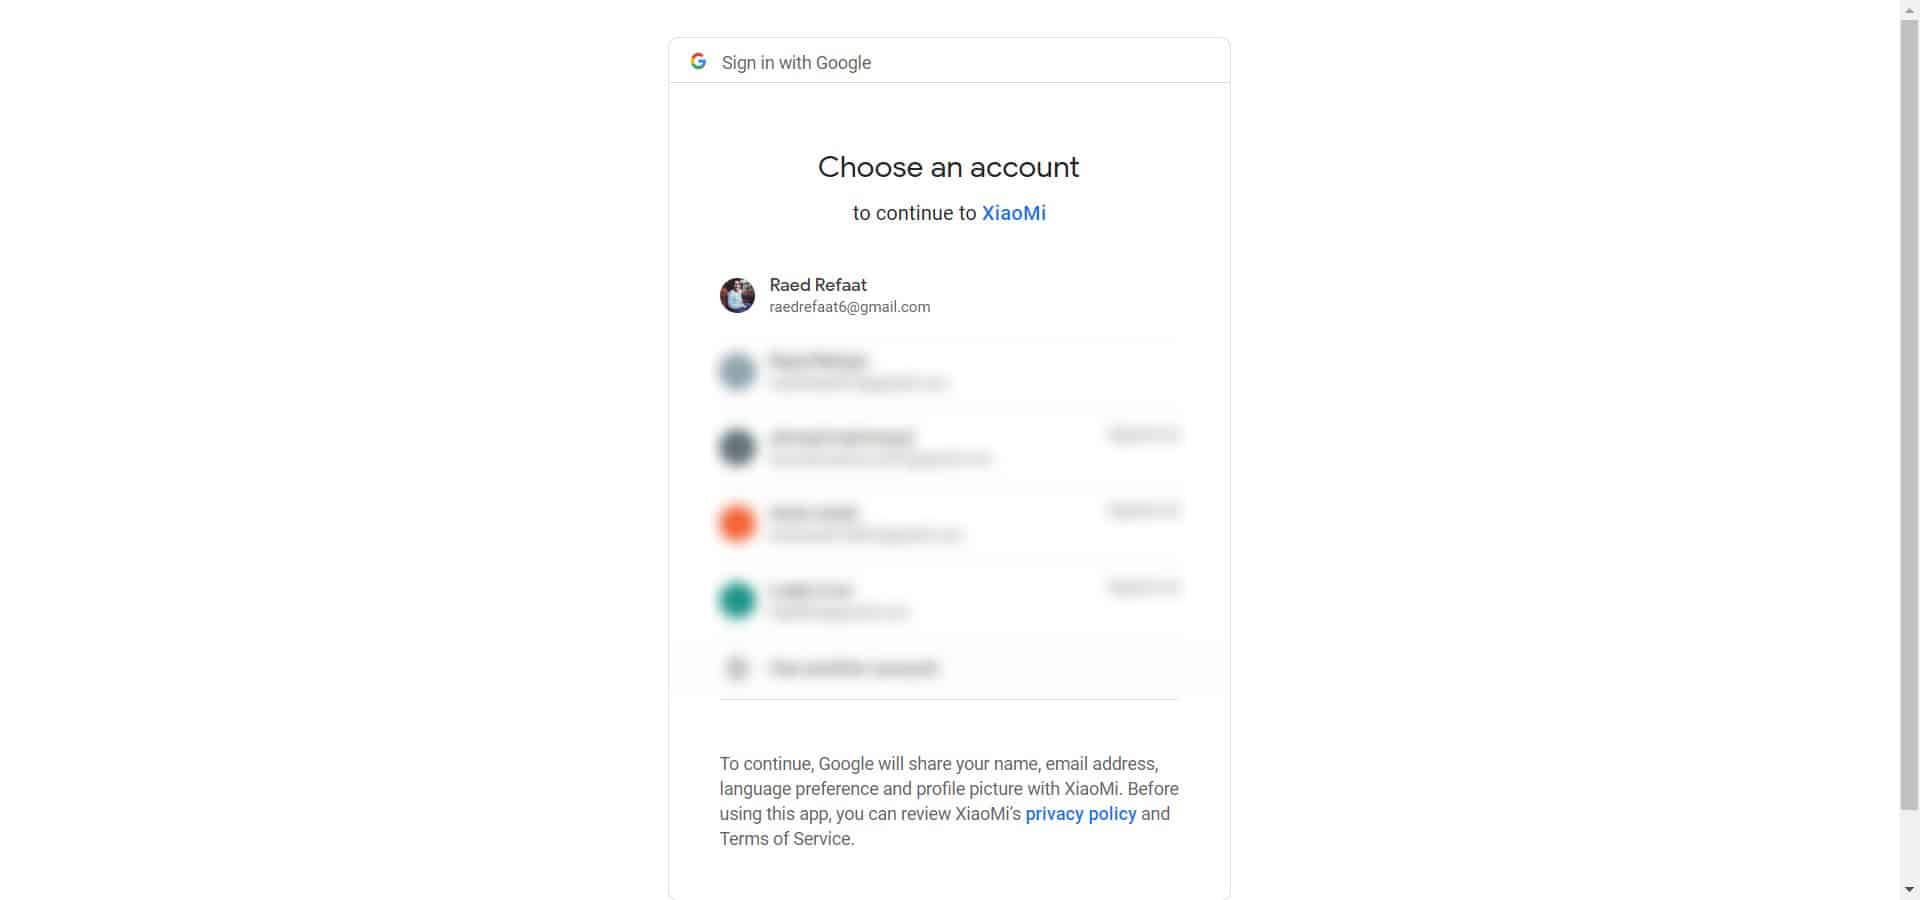 اختيار البريد الإلكتروني من جوجل المناسب للتسجيل في المنصة